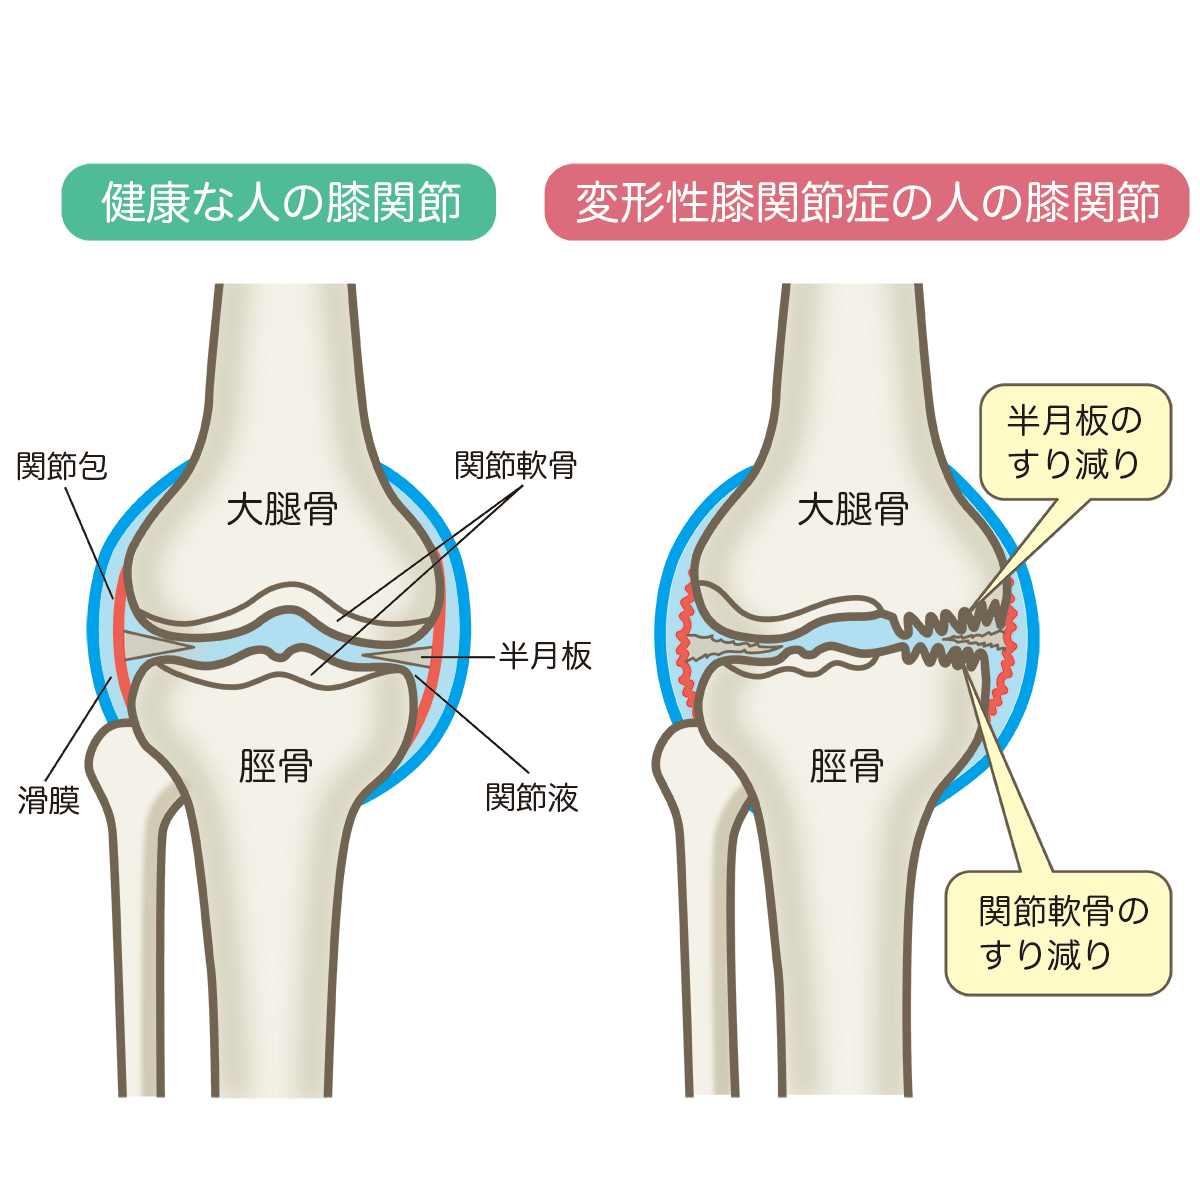 変形性膝関節症 | 佐藤整形外科医院 | 宮城県石巻市